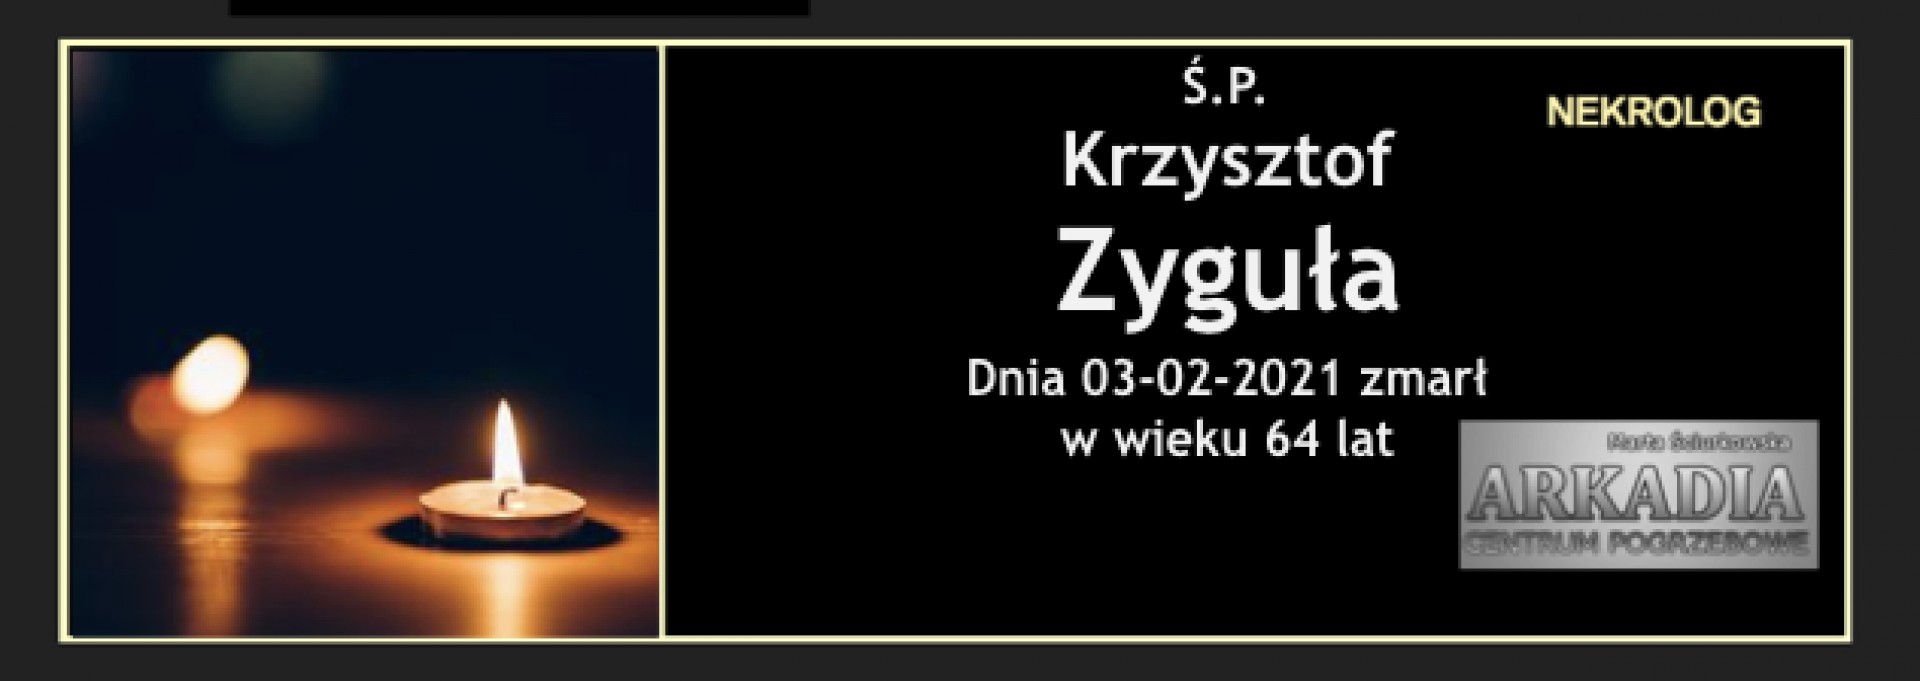 Ś.P. Krzysztof Zyguła